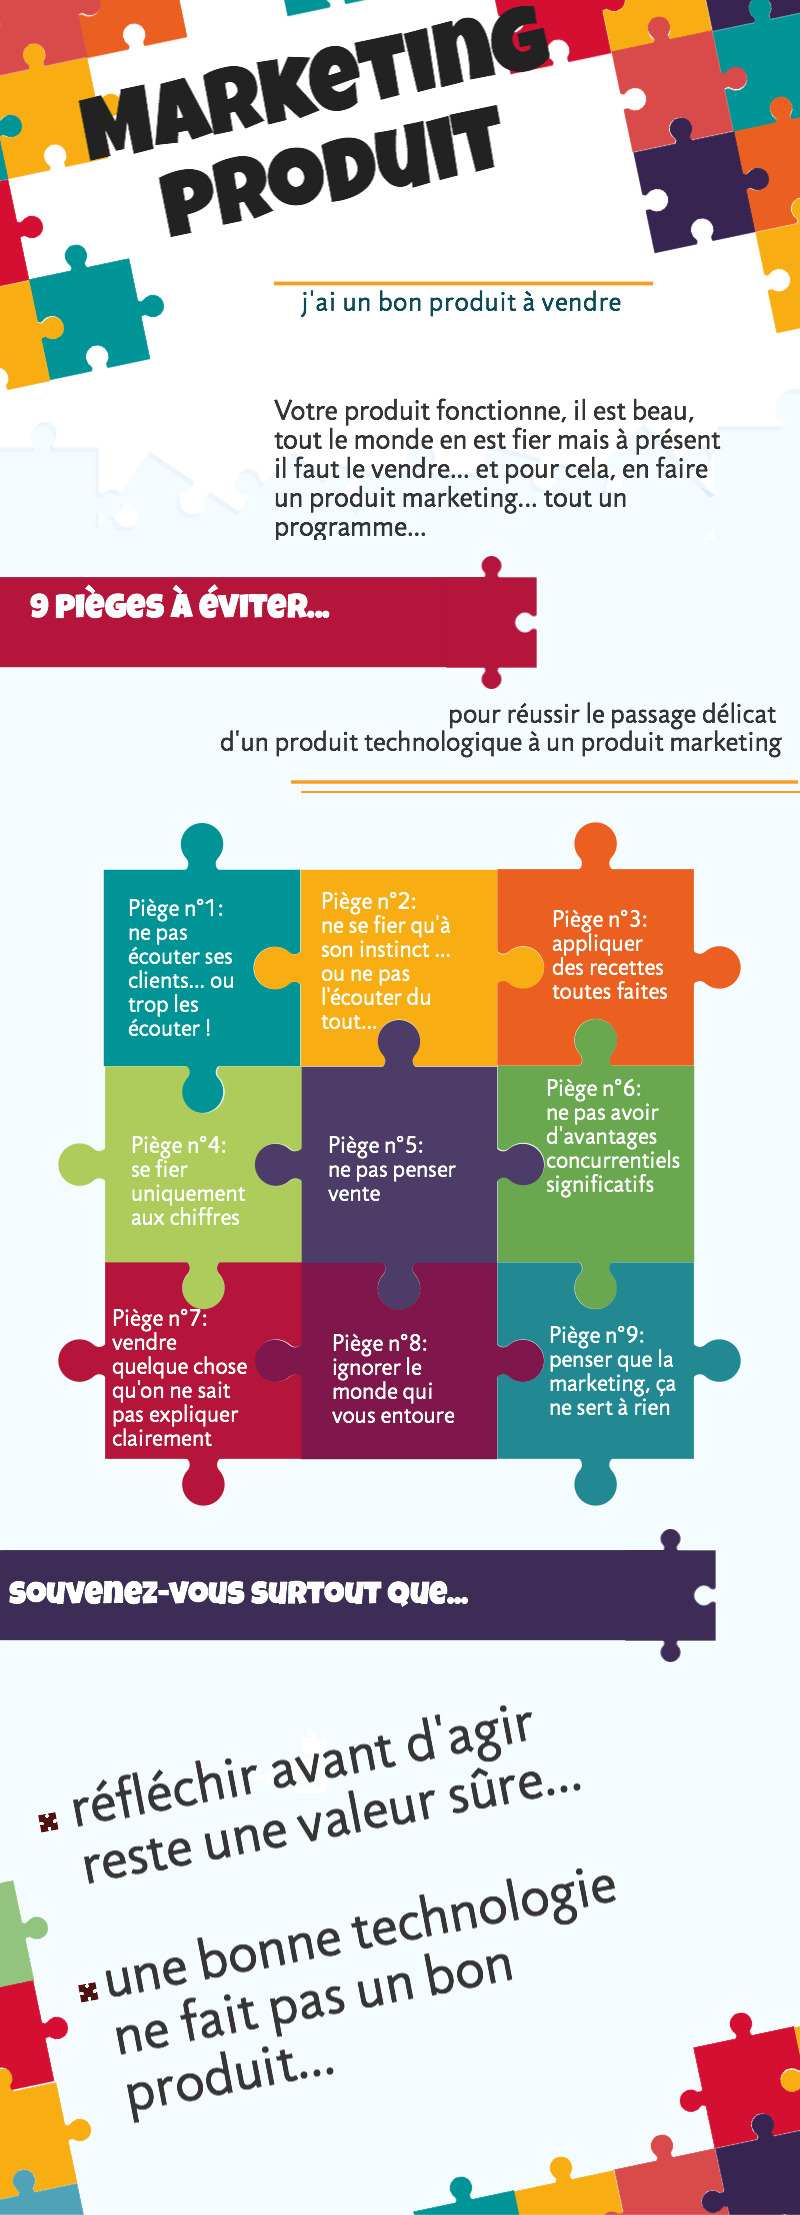 9 pièges a éviter pour passer d'un produit technologique à un produit marketing